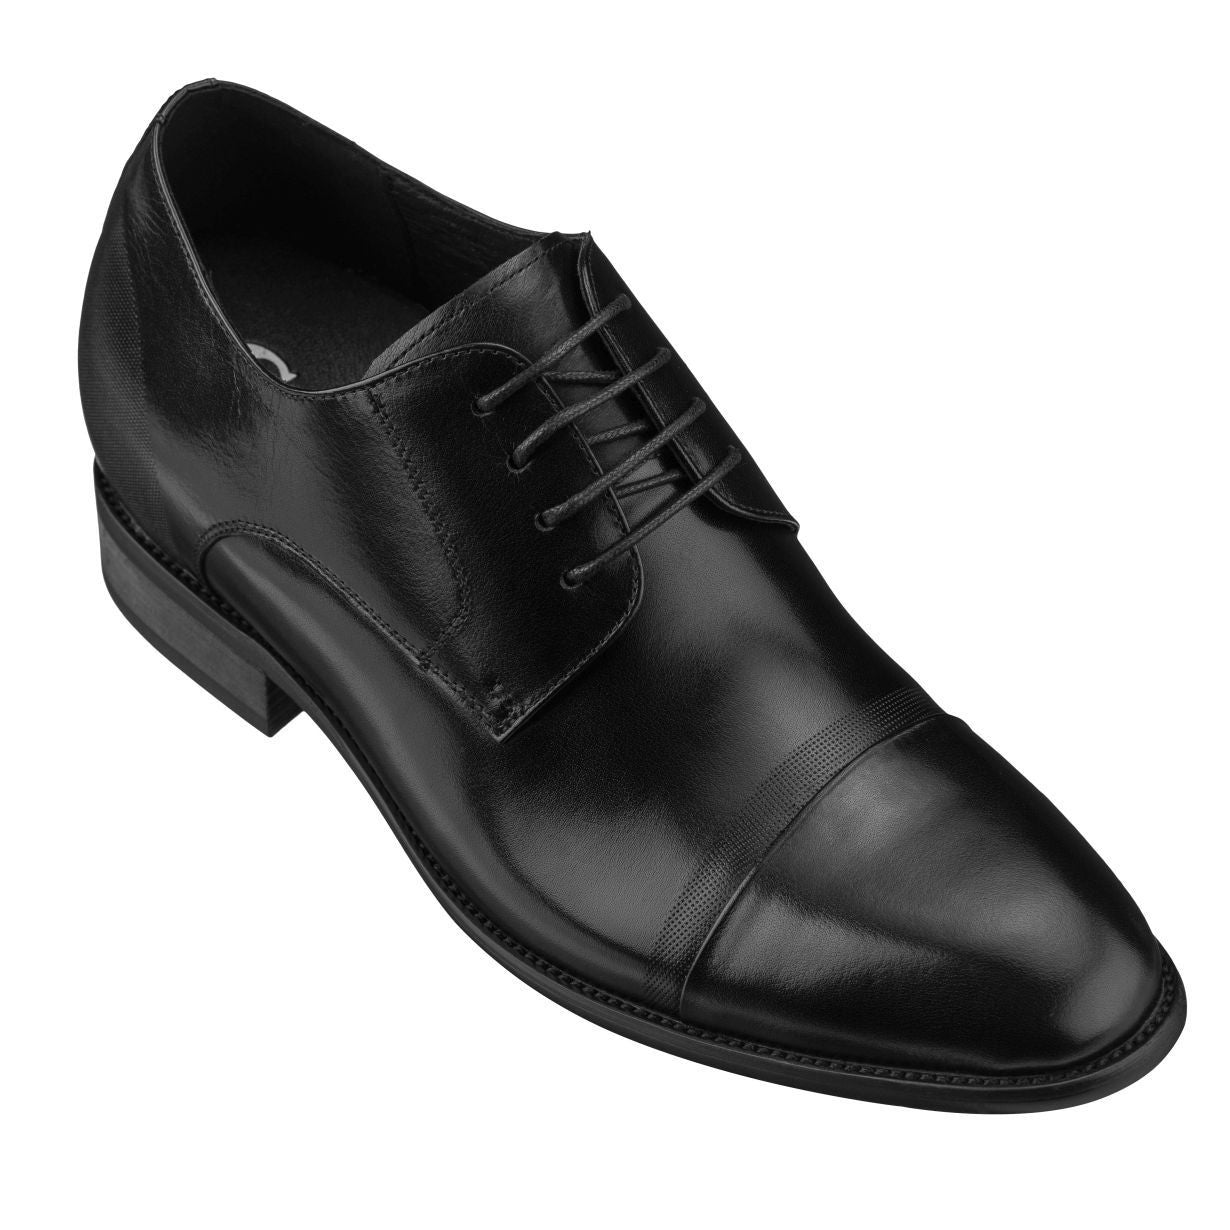 CALTO Black Formal Dress Shoes - TallMenShoes.com – Tallmenshoes.com